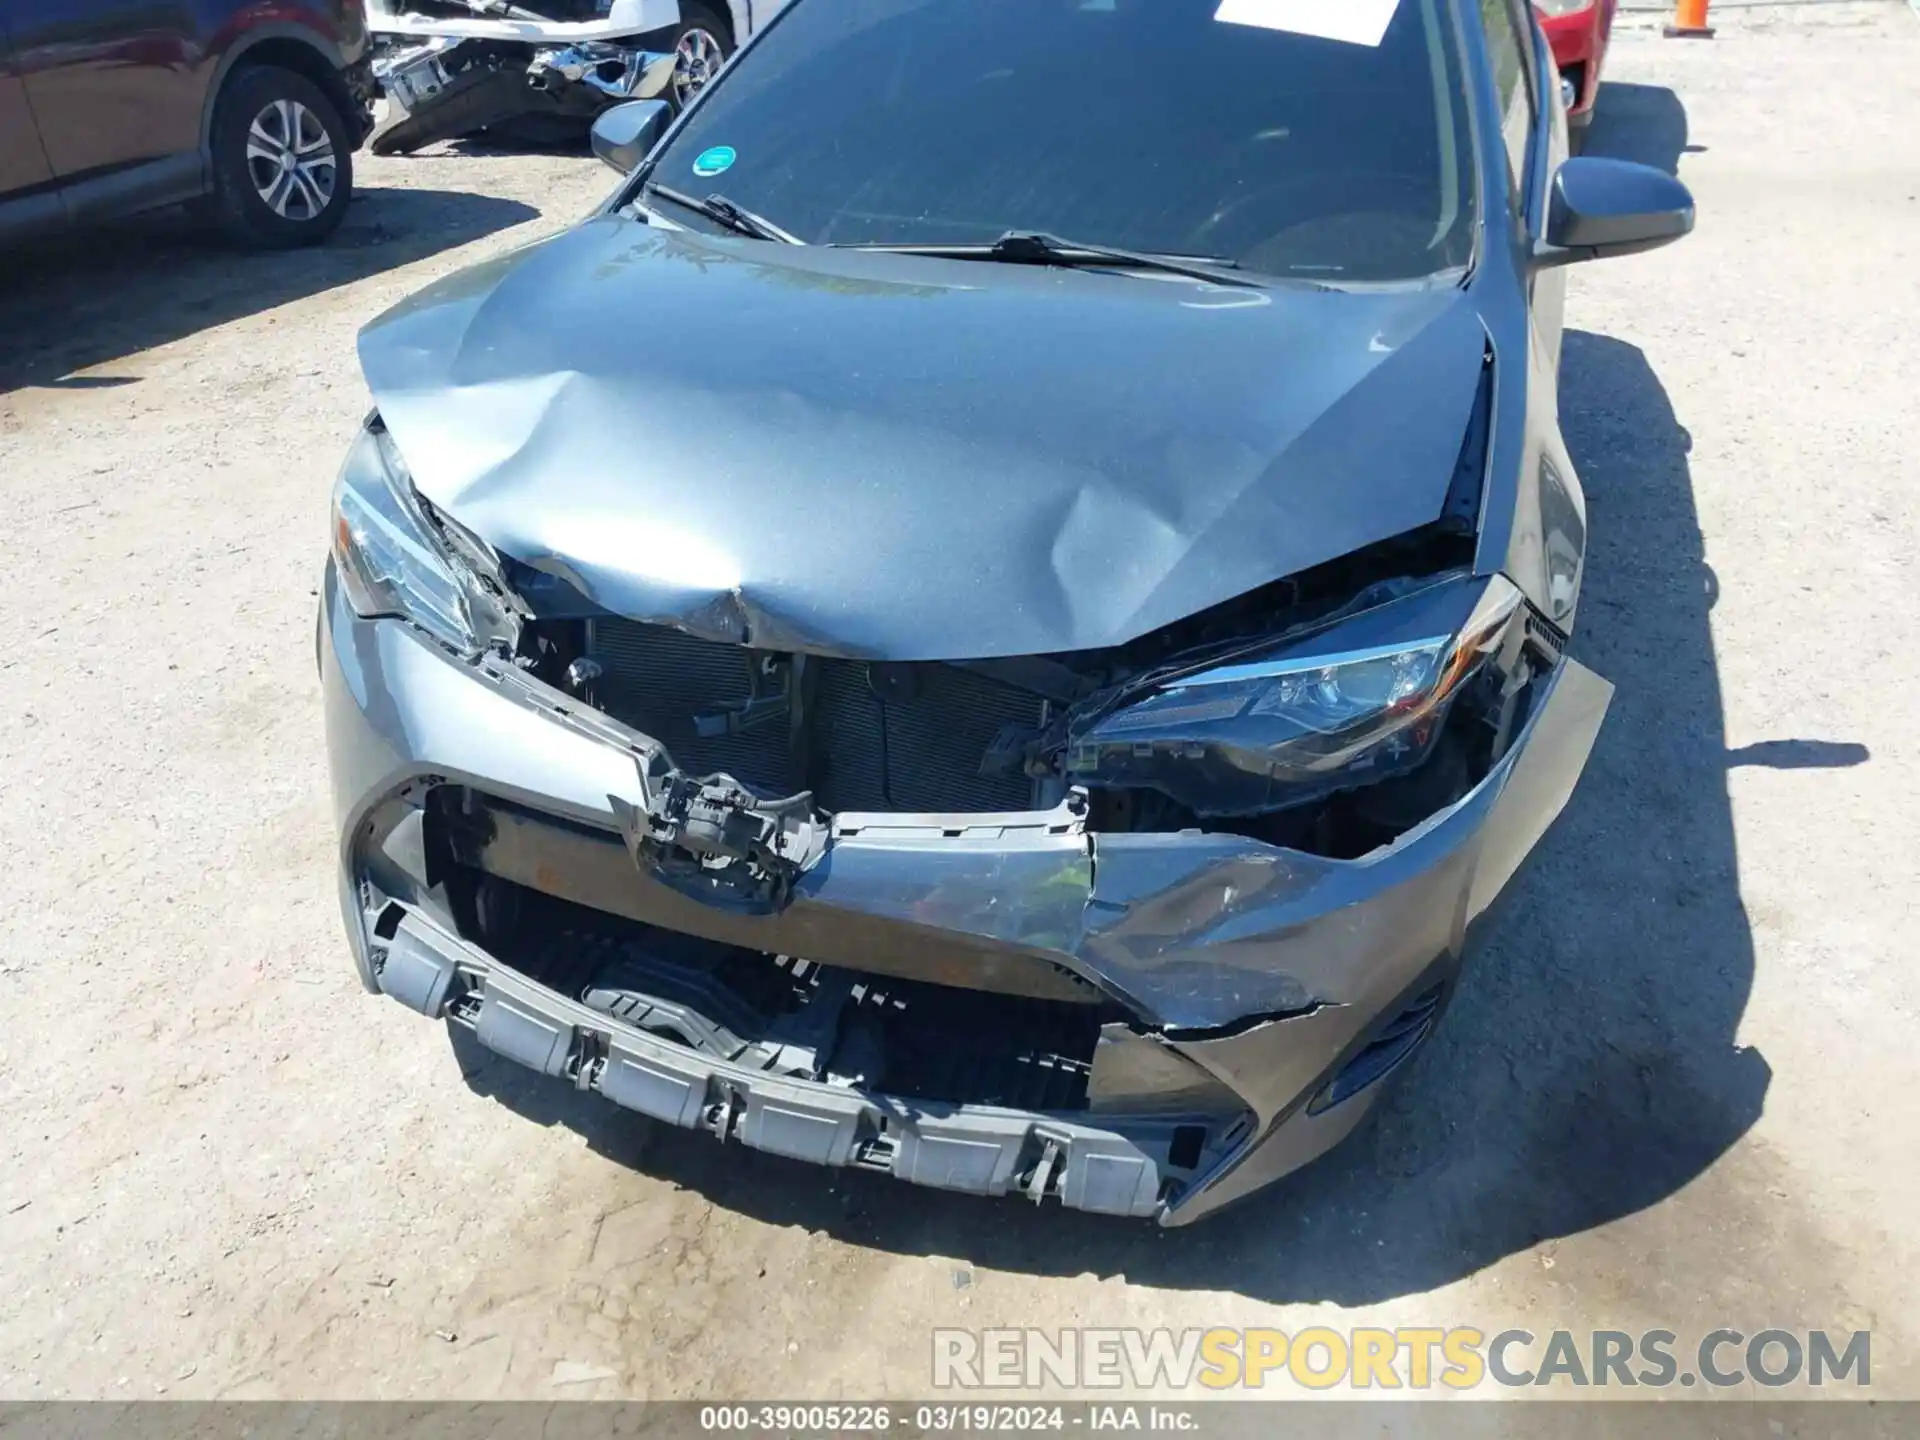 12 Photograph of a damaged car 5YFBURHE0KP866548 TOYOTA COROLLA 2019